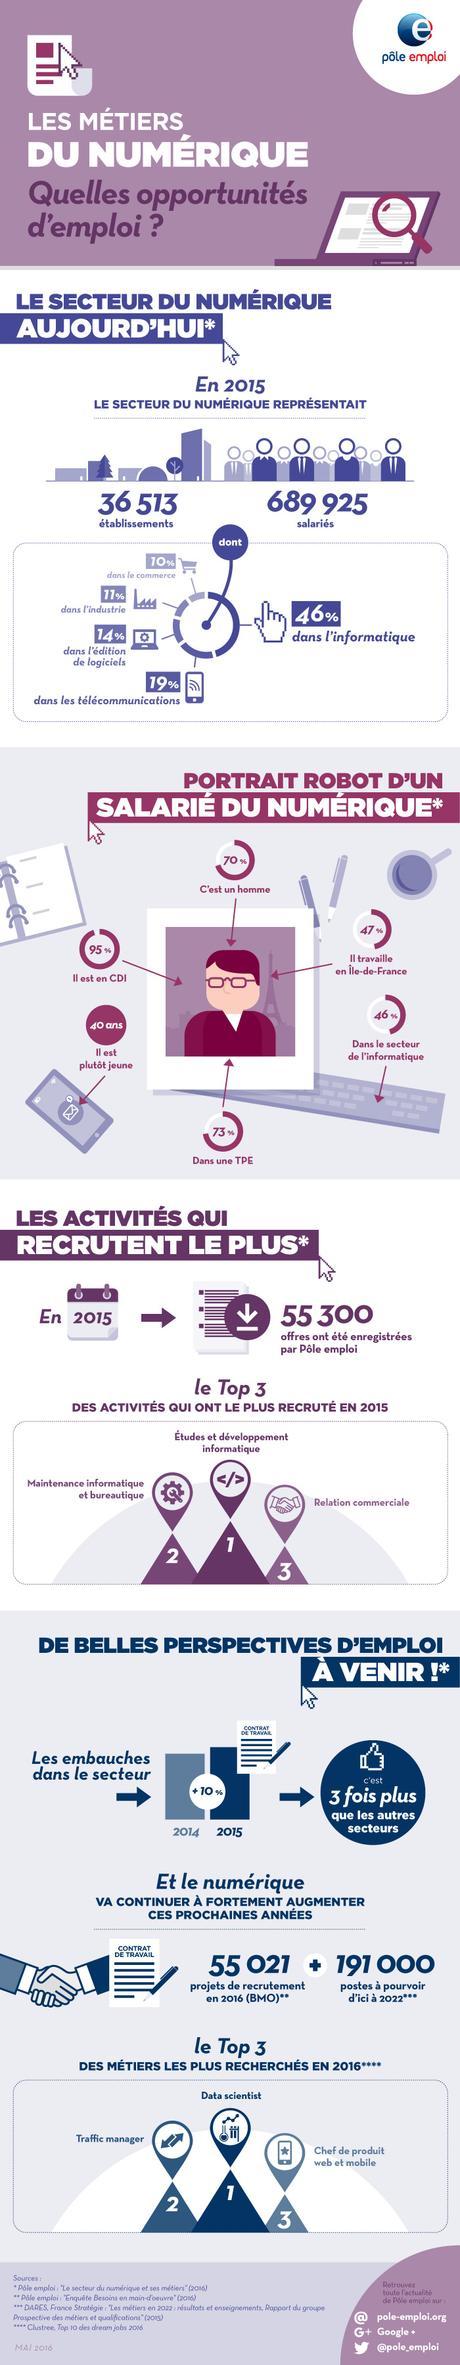 Les métiers du numérique en France : scope 2015 à 2022